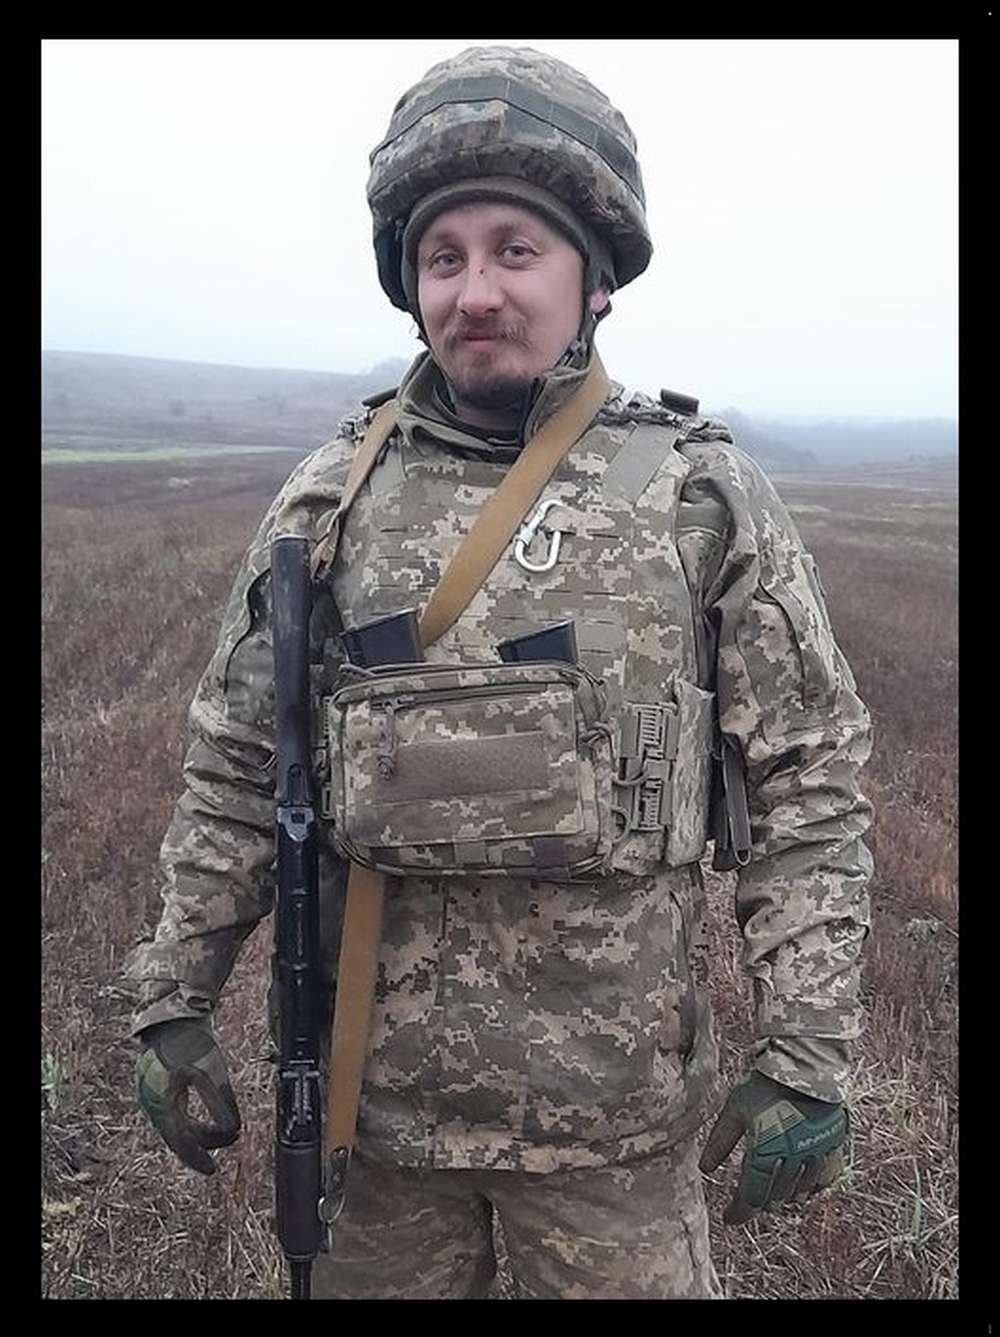 На війні загинув віцепрезидент Федерації шахів України Артем Сачук